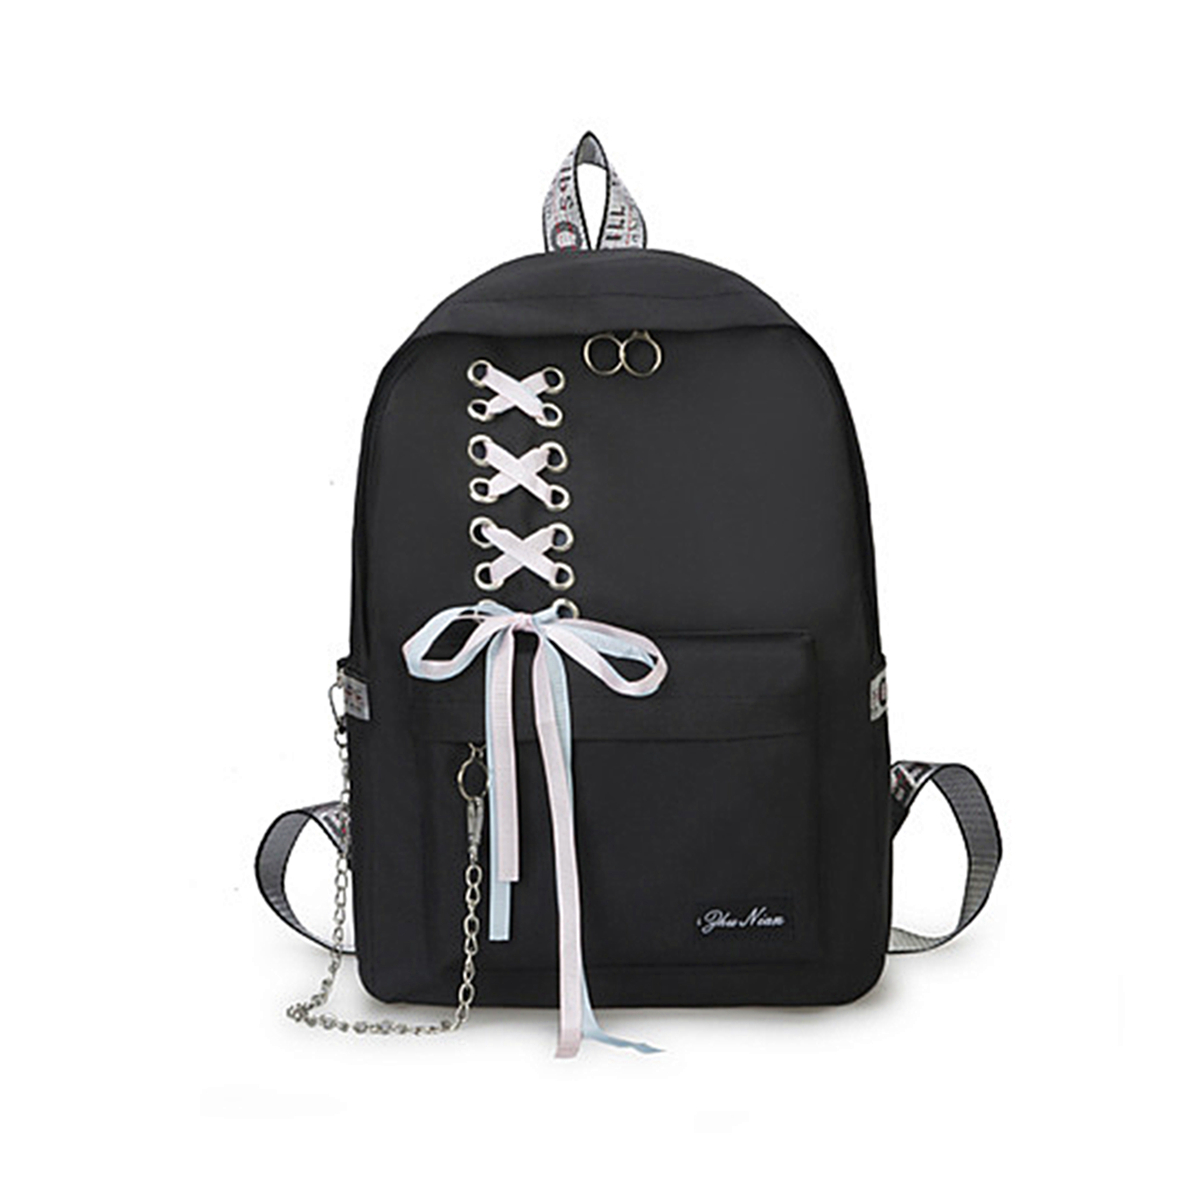 15L-Canvas-Backpack-Student-School-Rucksack-Shoulder-Bag-Outdoor-Travel-1549518-2